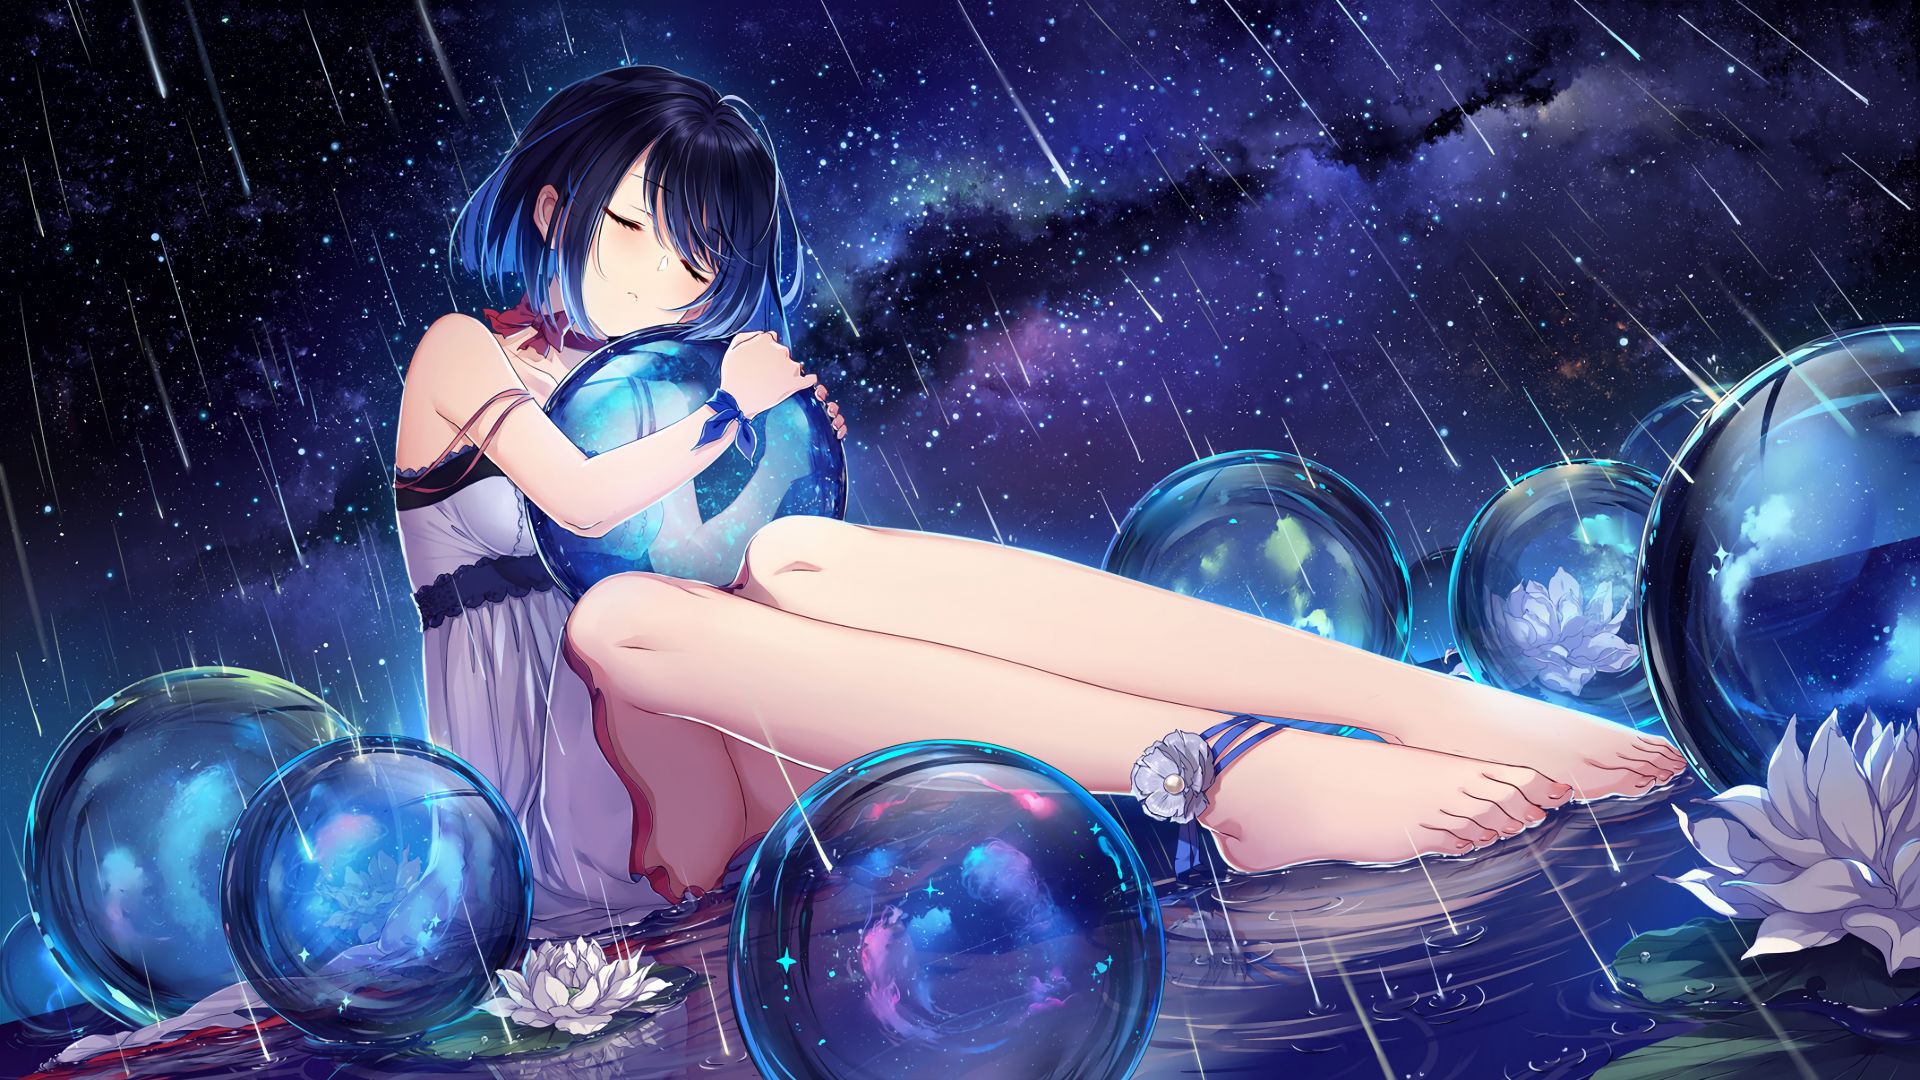 Desktop Wallpaper Rain, Anime Girl, Balls, Night, Hd Image, Picture,  Background, Zsznkv